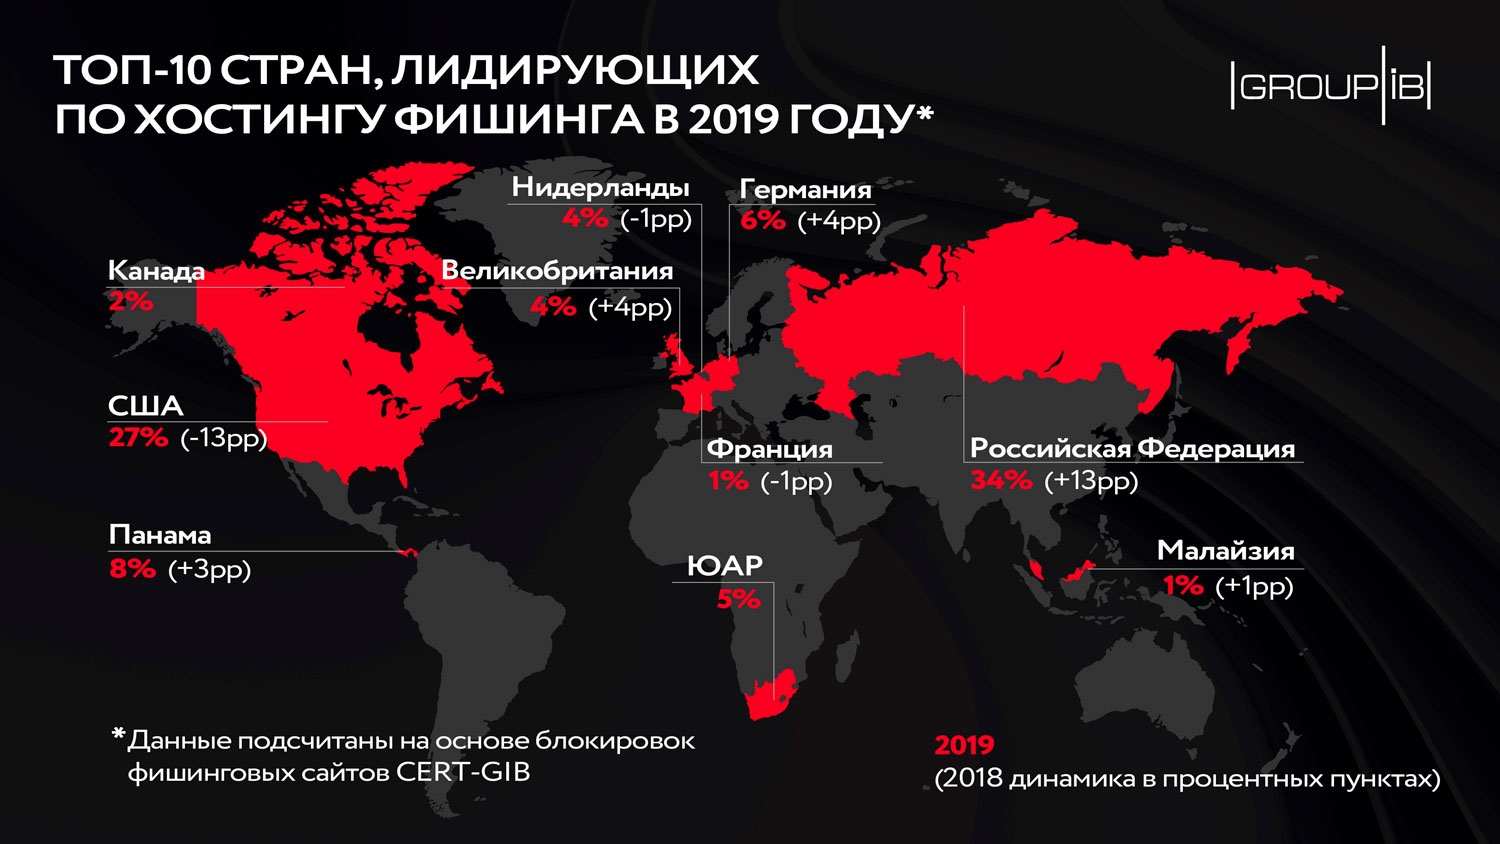 Group-IB: Россия обогнала США по хостингу фишинговых ресурсов